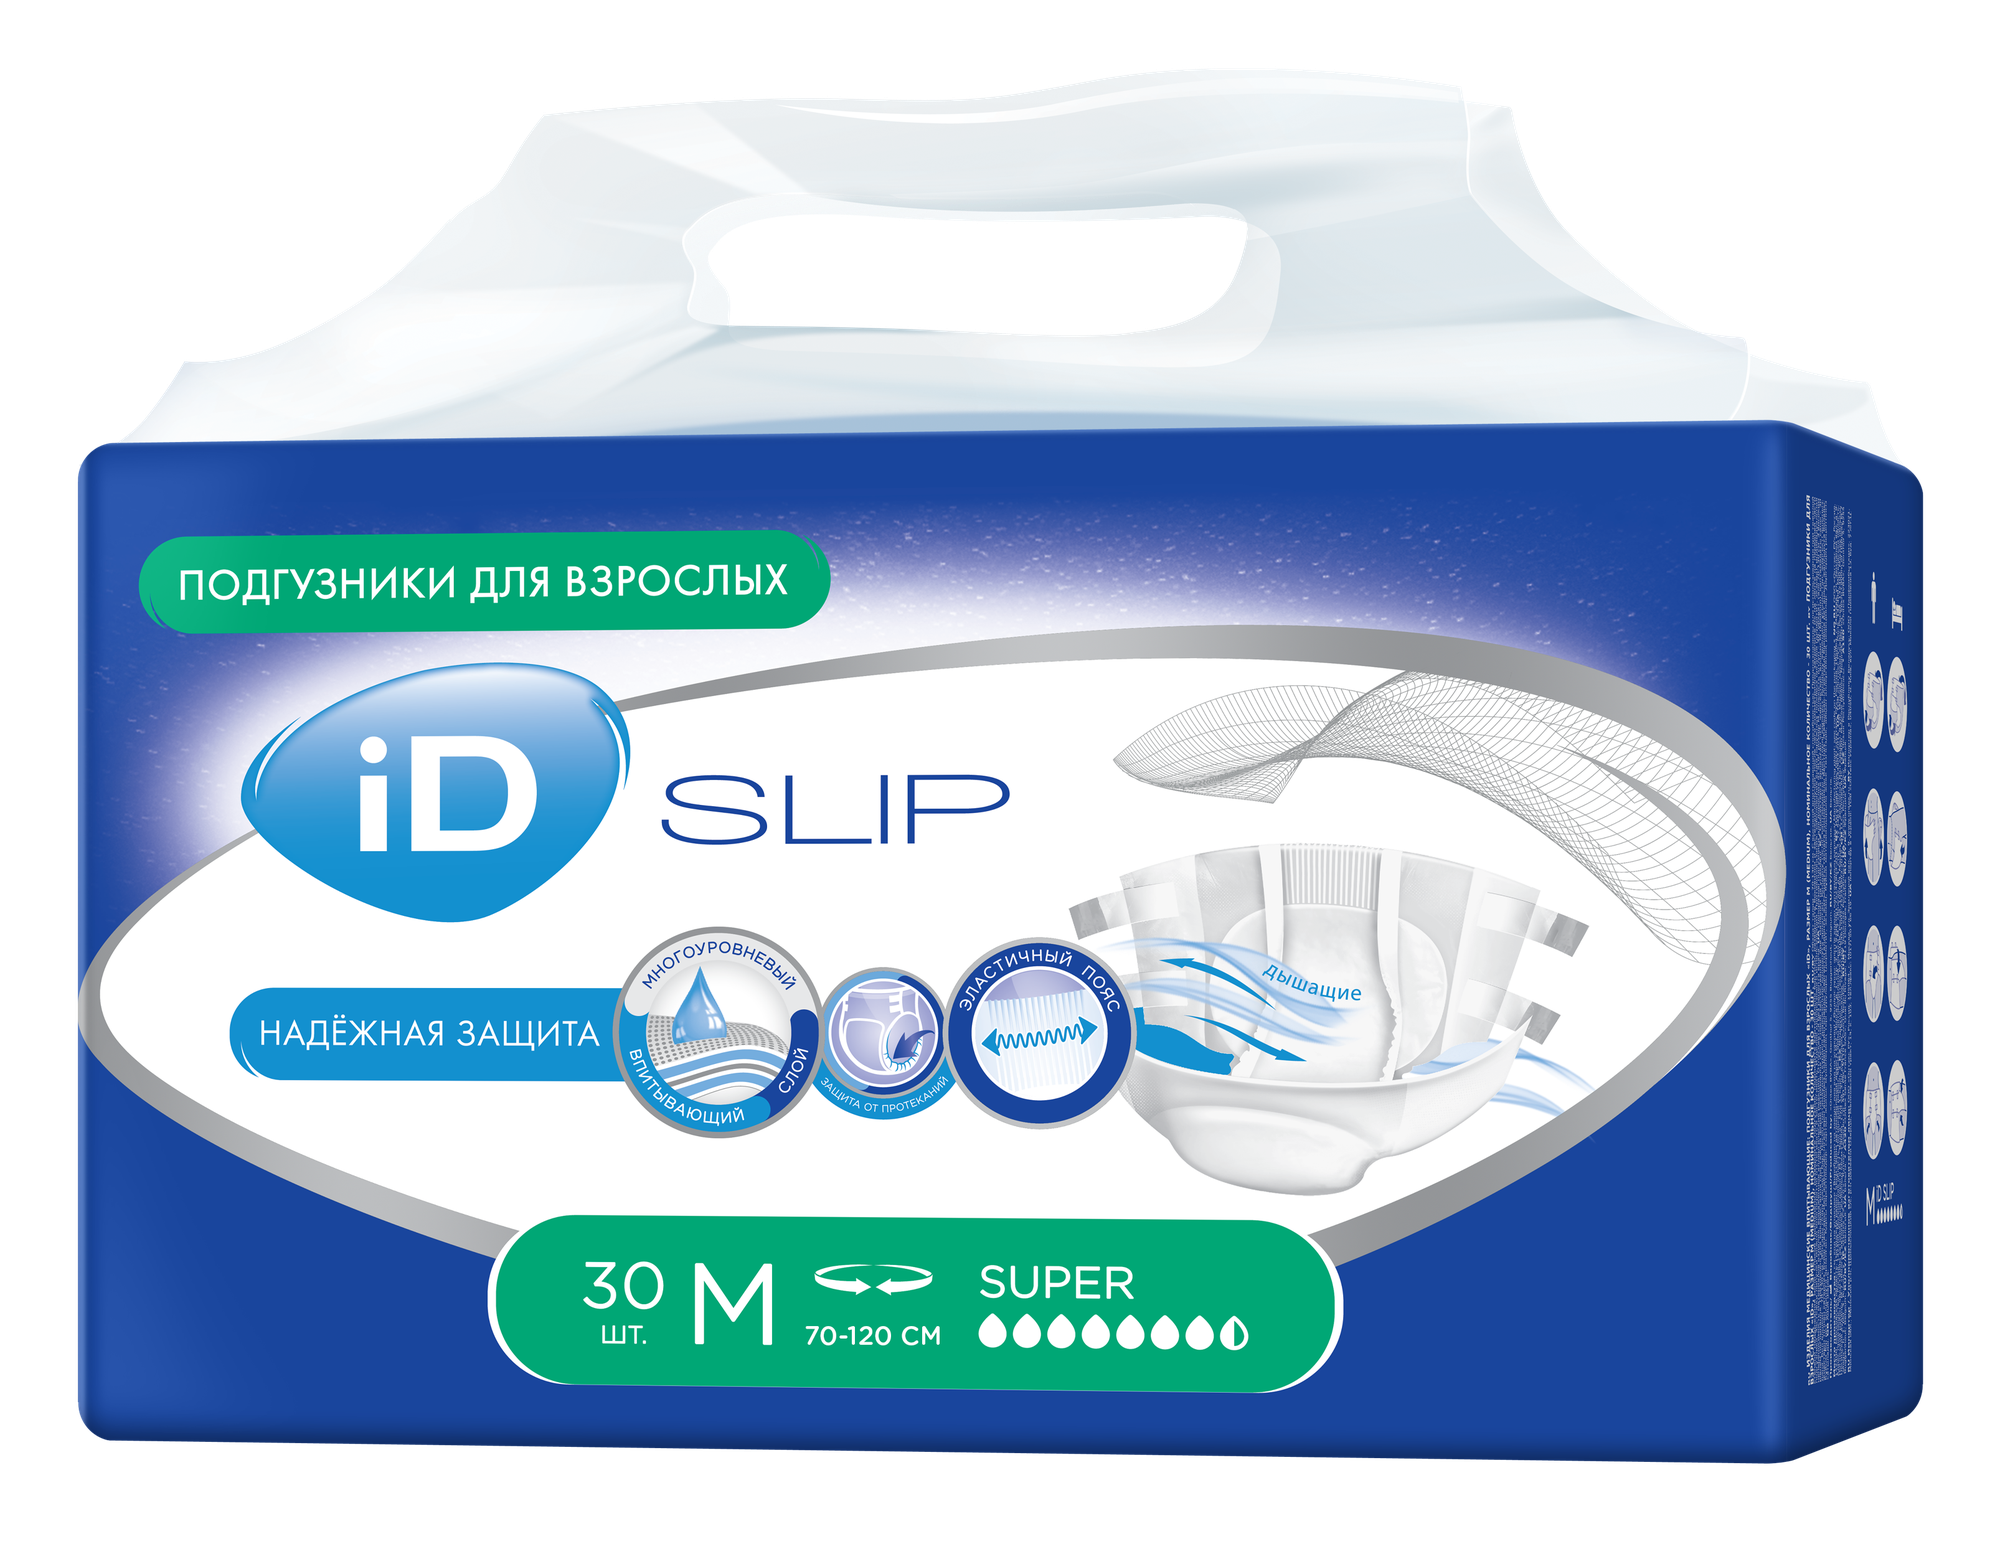 Подгузники для взрослых iD Slip Medium, объем талии 70-120 см, 30 шт.